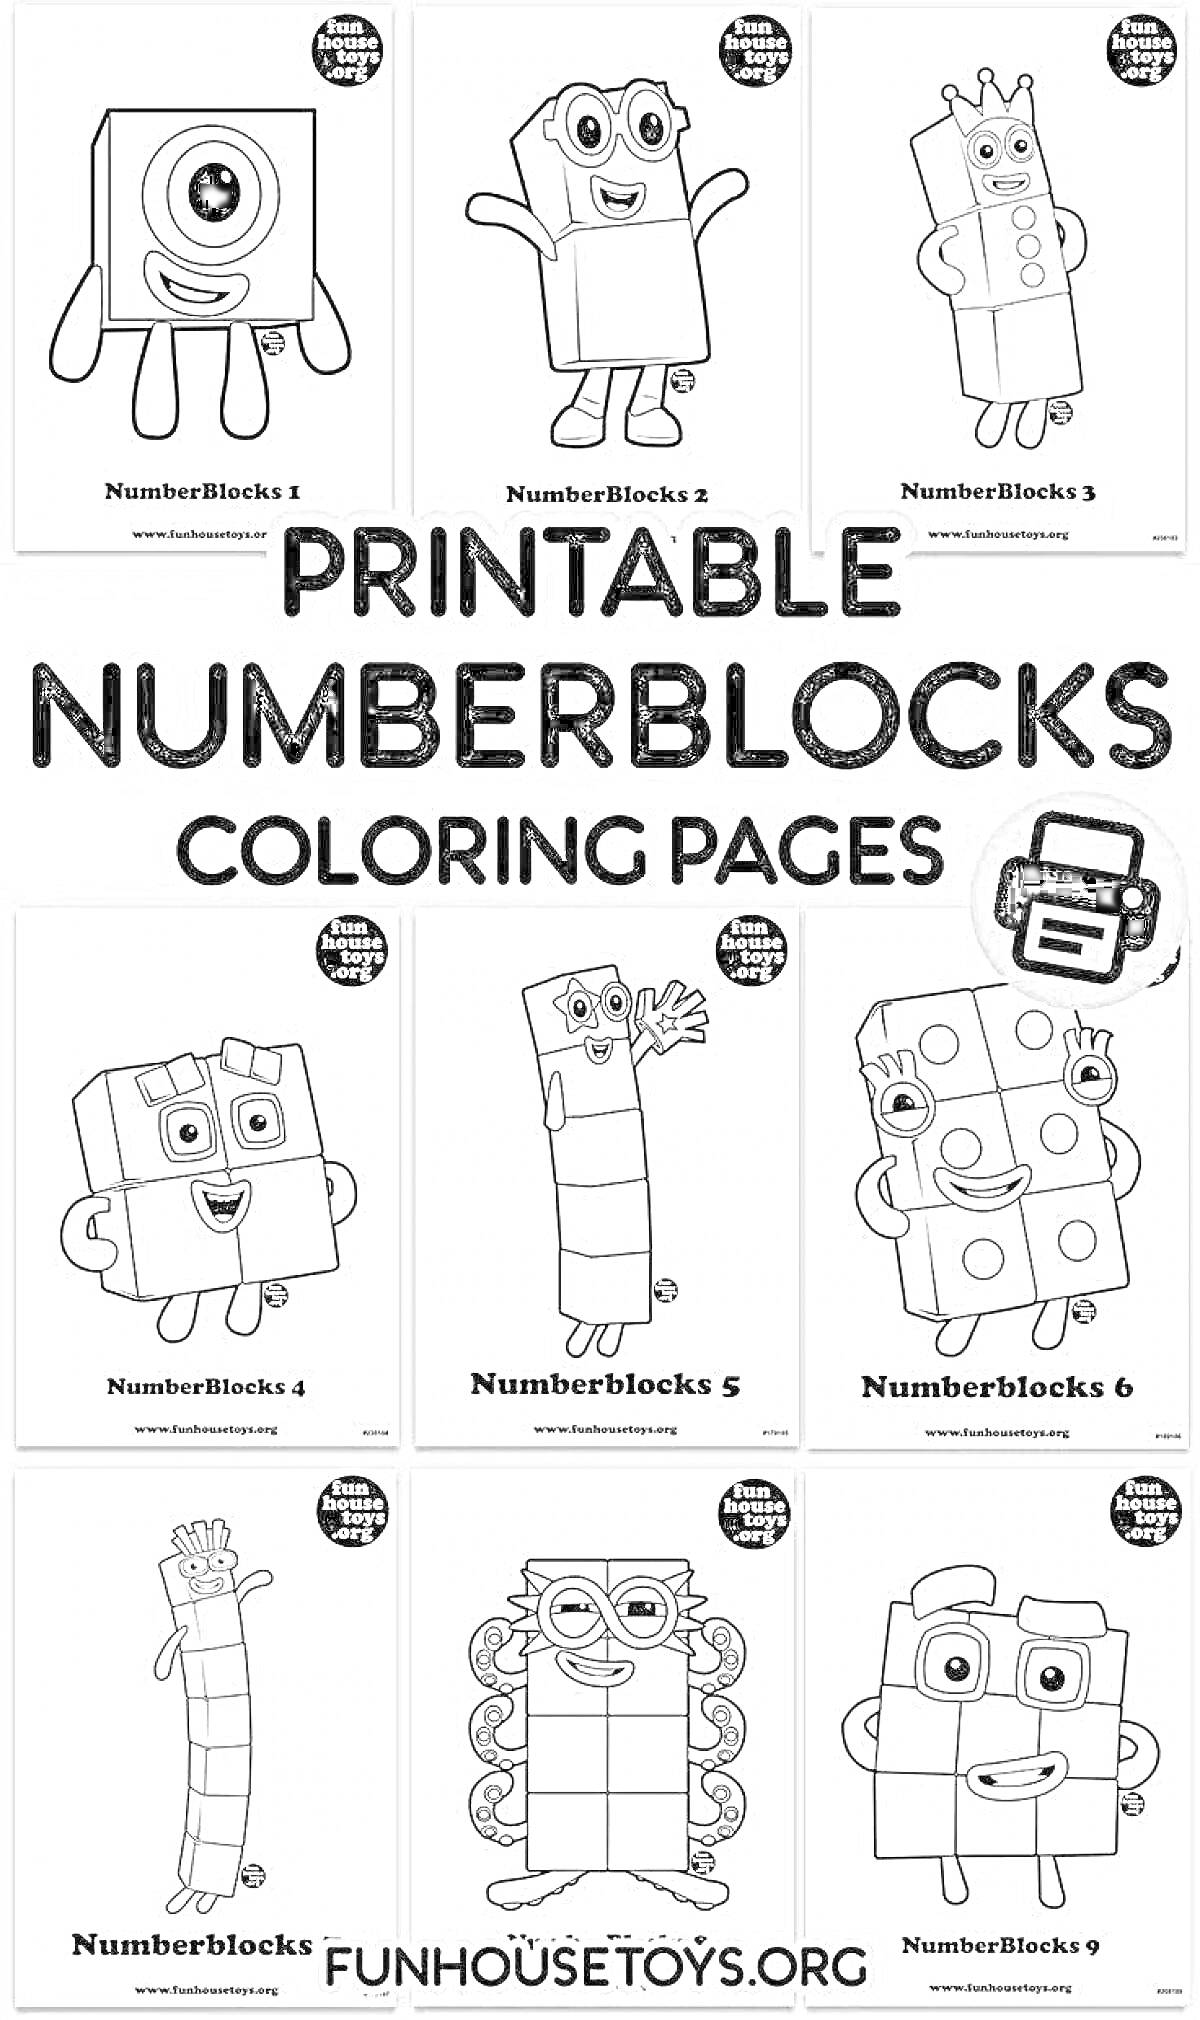 Раскраска Раскраски Numberblocks 1-9, каждый блок содержит соответствующую цифру и лицо: Numberblocks 1 с одним глазом, Numberblocks 2 с руками вверх, Numberblocks 3 с короной, Numberblocks 4 с руками вверх, Numberblocks 5 с одной рукой вверх, Numberblocks 6 улыбаю